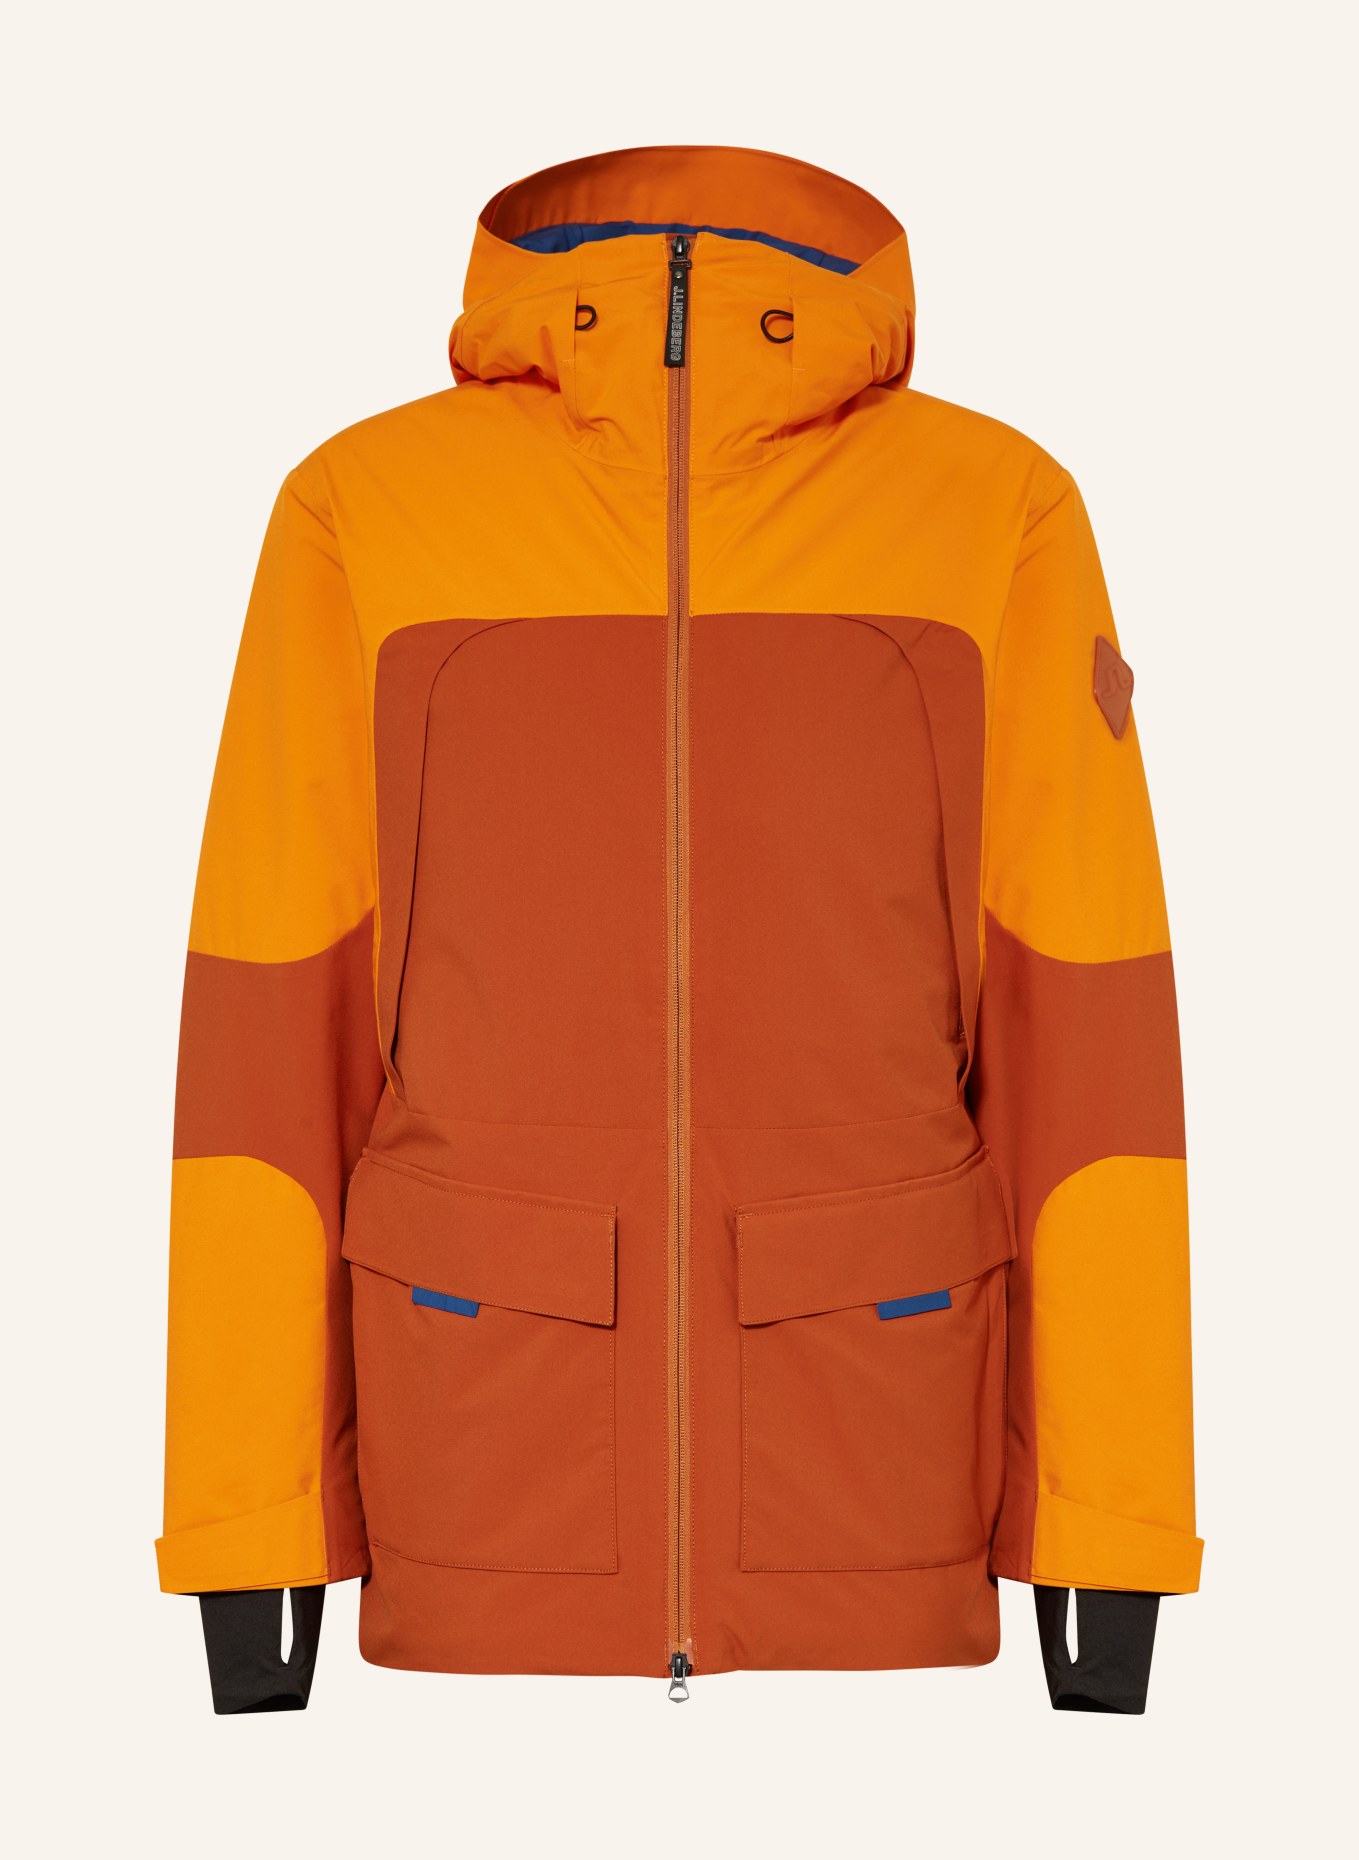 J.LINDEBERG Ski jacket in orange/ dark orange/ blue